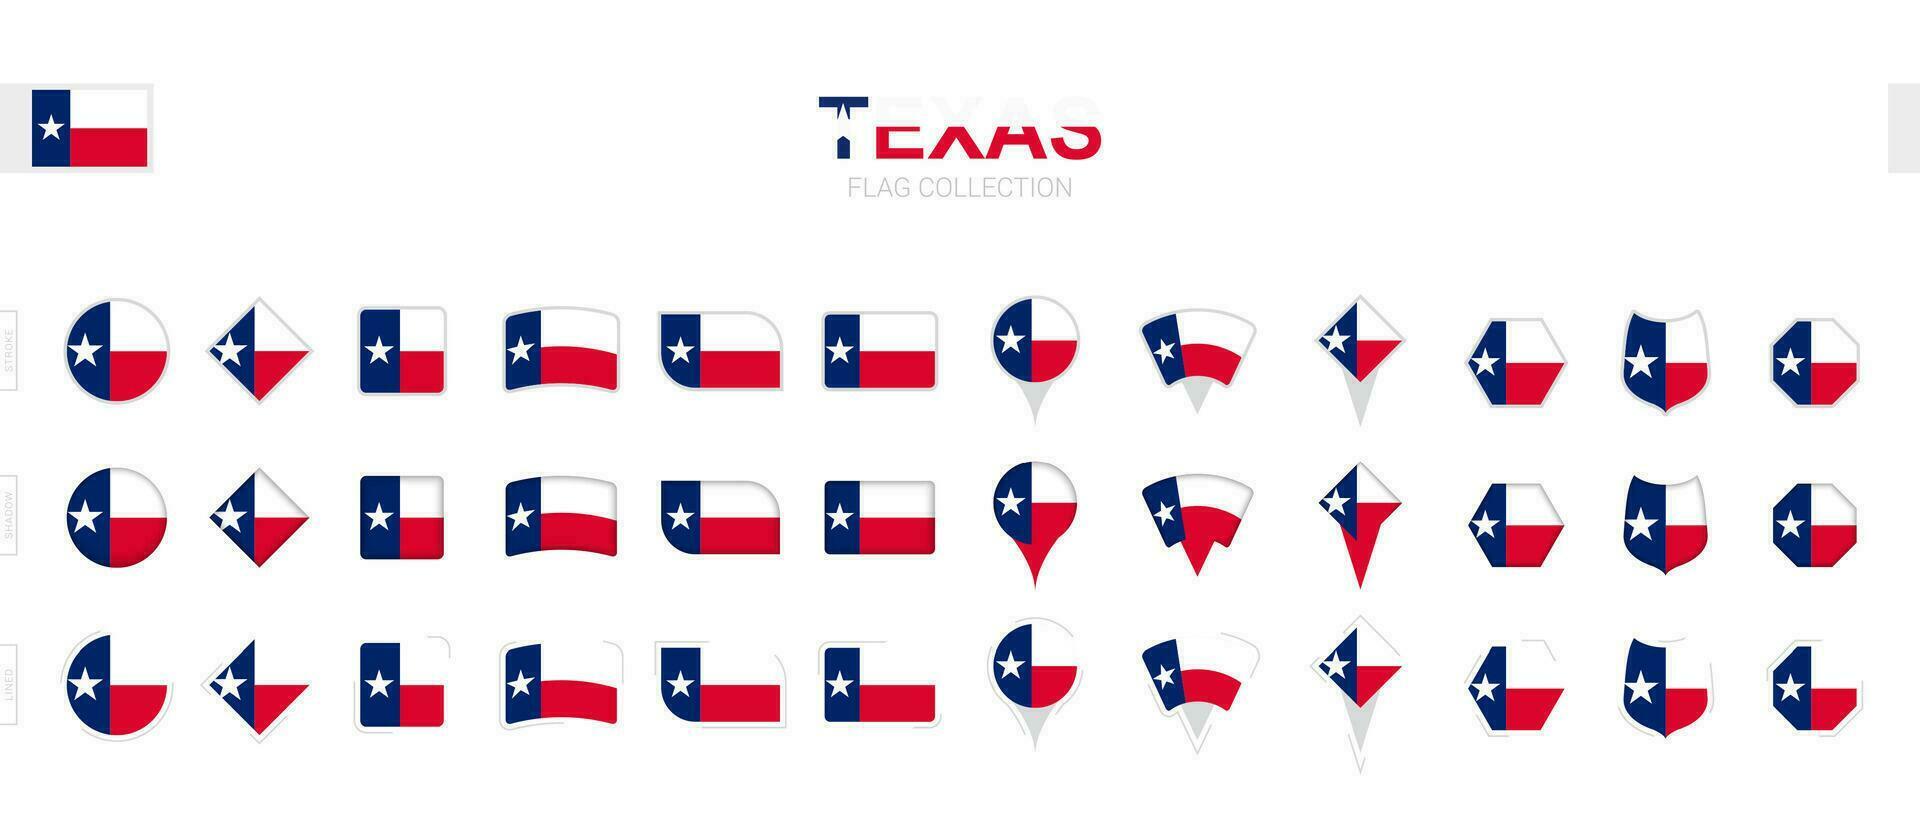 grande colección de Texas banderas de varios formas y efectos vector